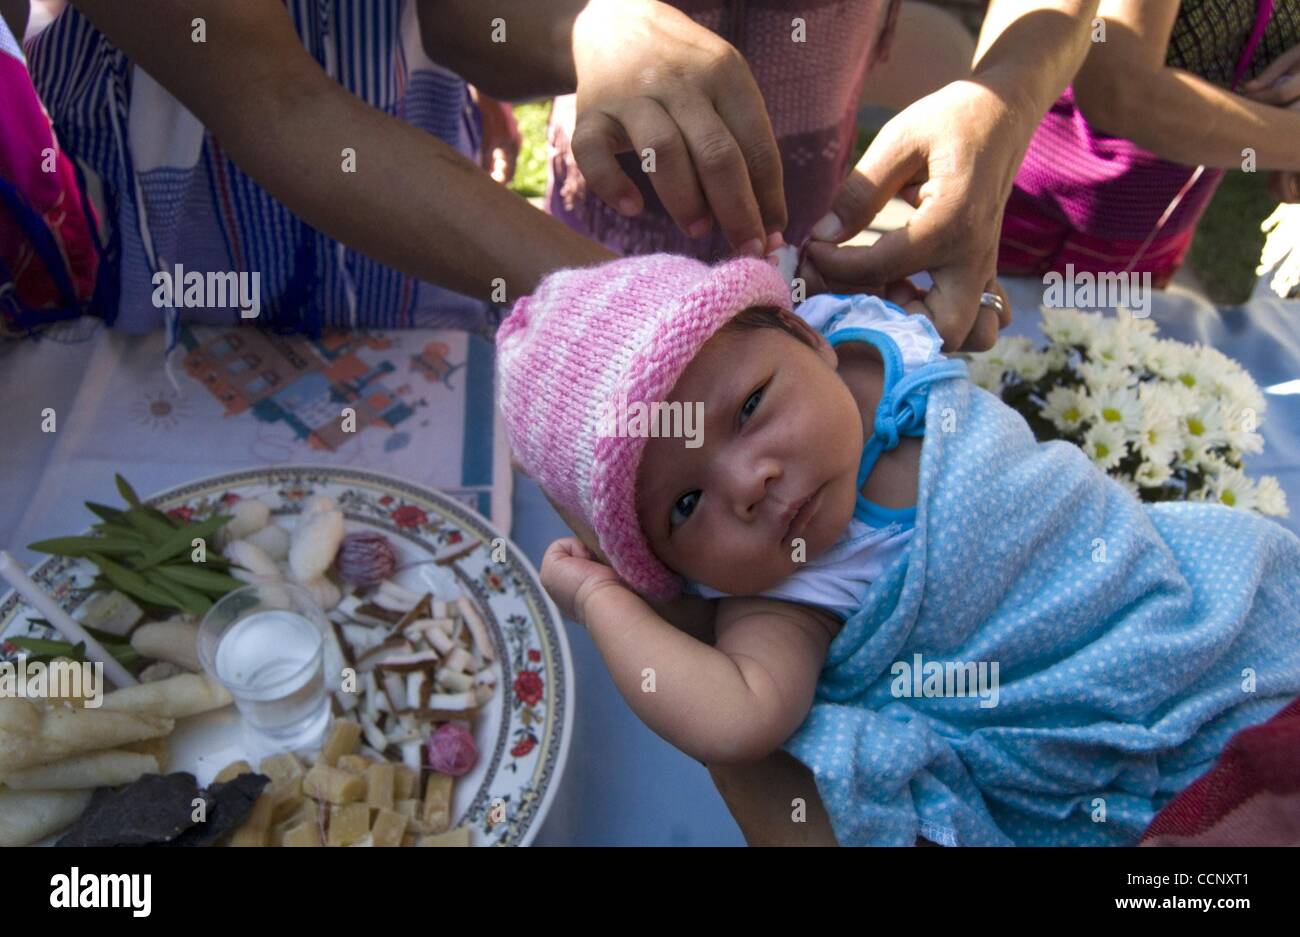 21. Februar 2004 erfährt - Houston, Texas, USA - A Baby Teil einer Feier zu Ehren der Ernte Sonne Blüte Apartments. Mehr als 100 birmanische Familien leben jetzt bei Blossom Sonnenberg und seine Schwester komplexe auf der anderen Straßenseite. Eine neue Familie scheint jede Woche erscheinen. Sie treten welche Flüchtlingshochkommissar Stockfoto